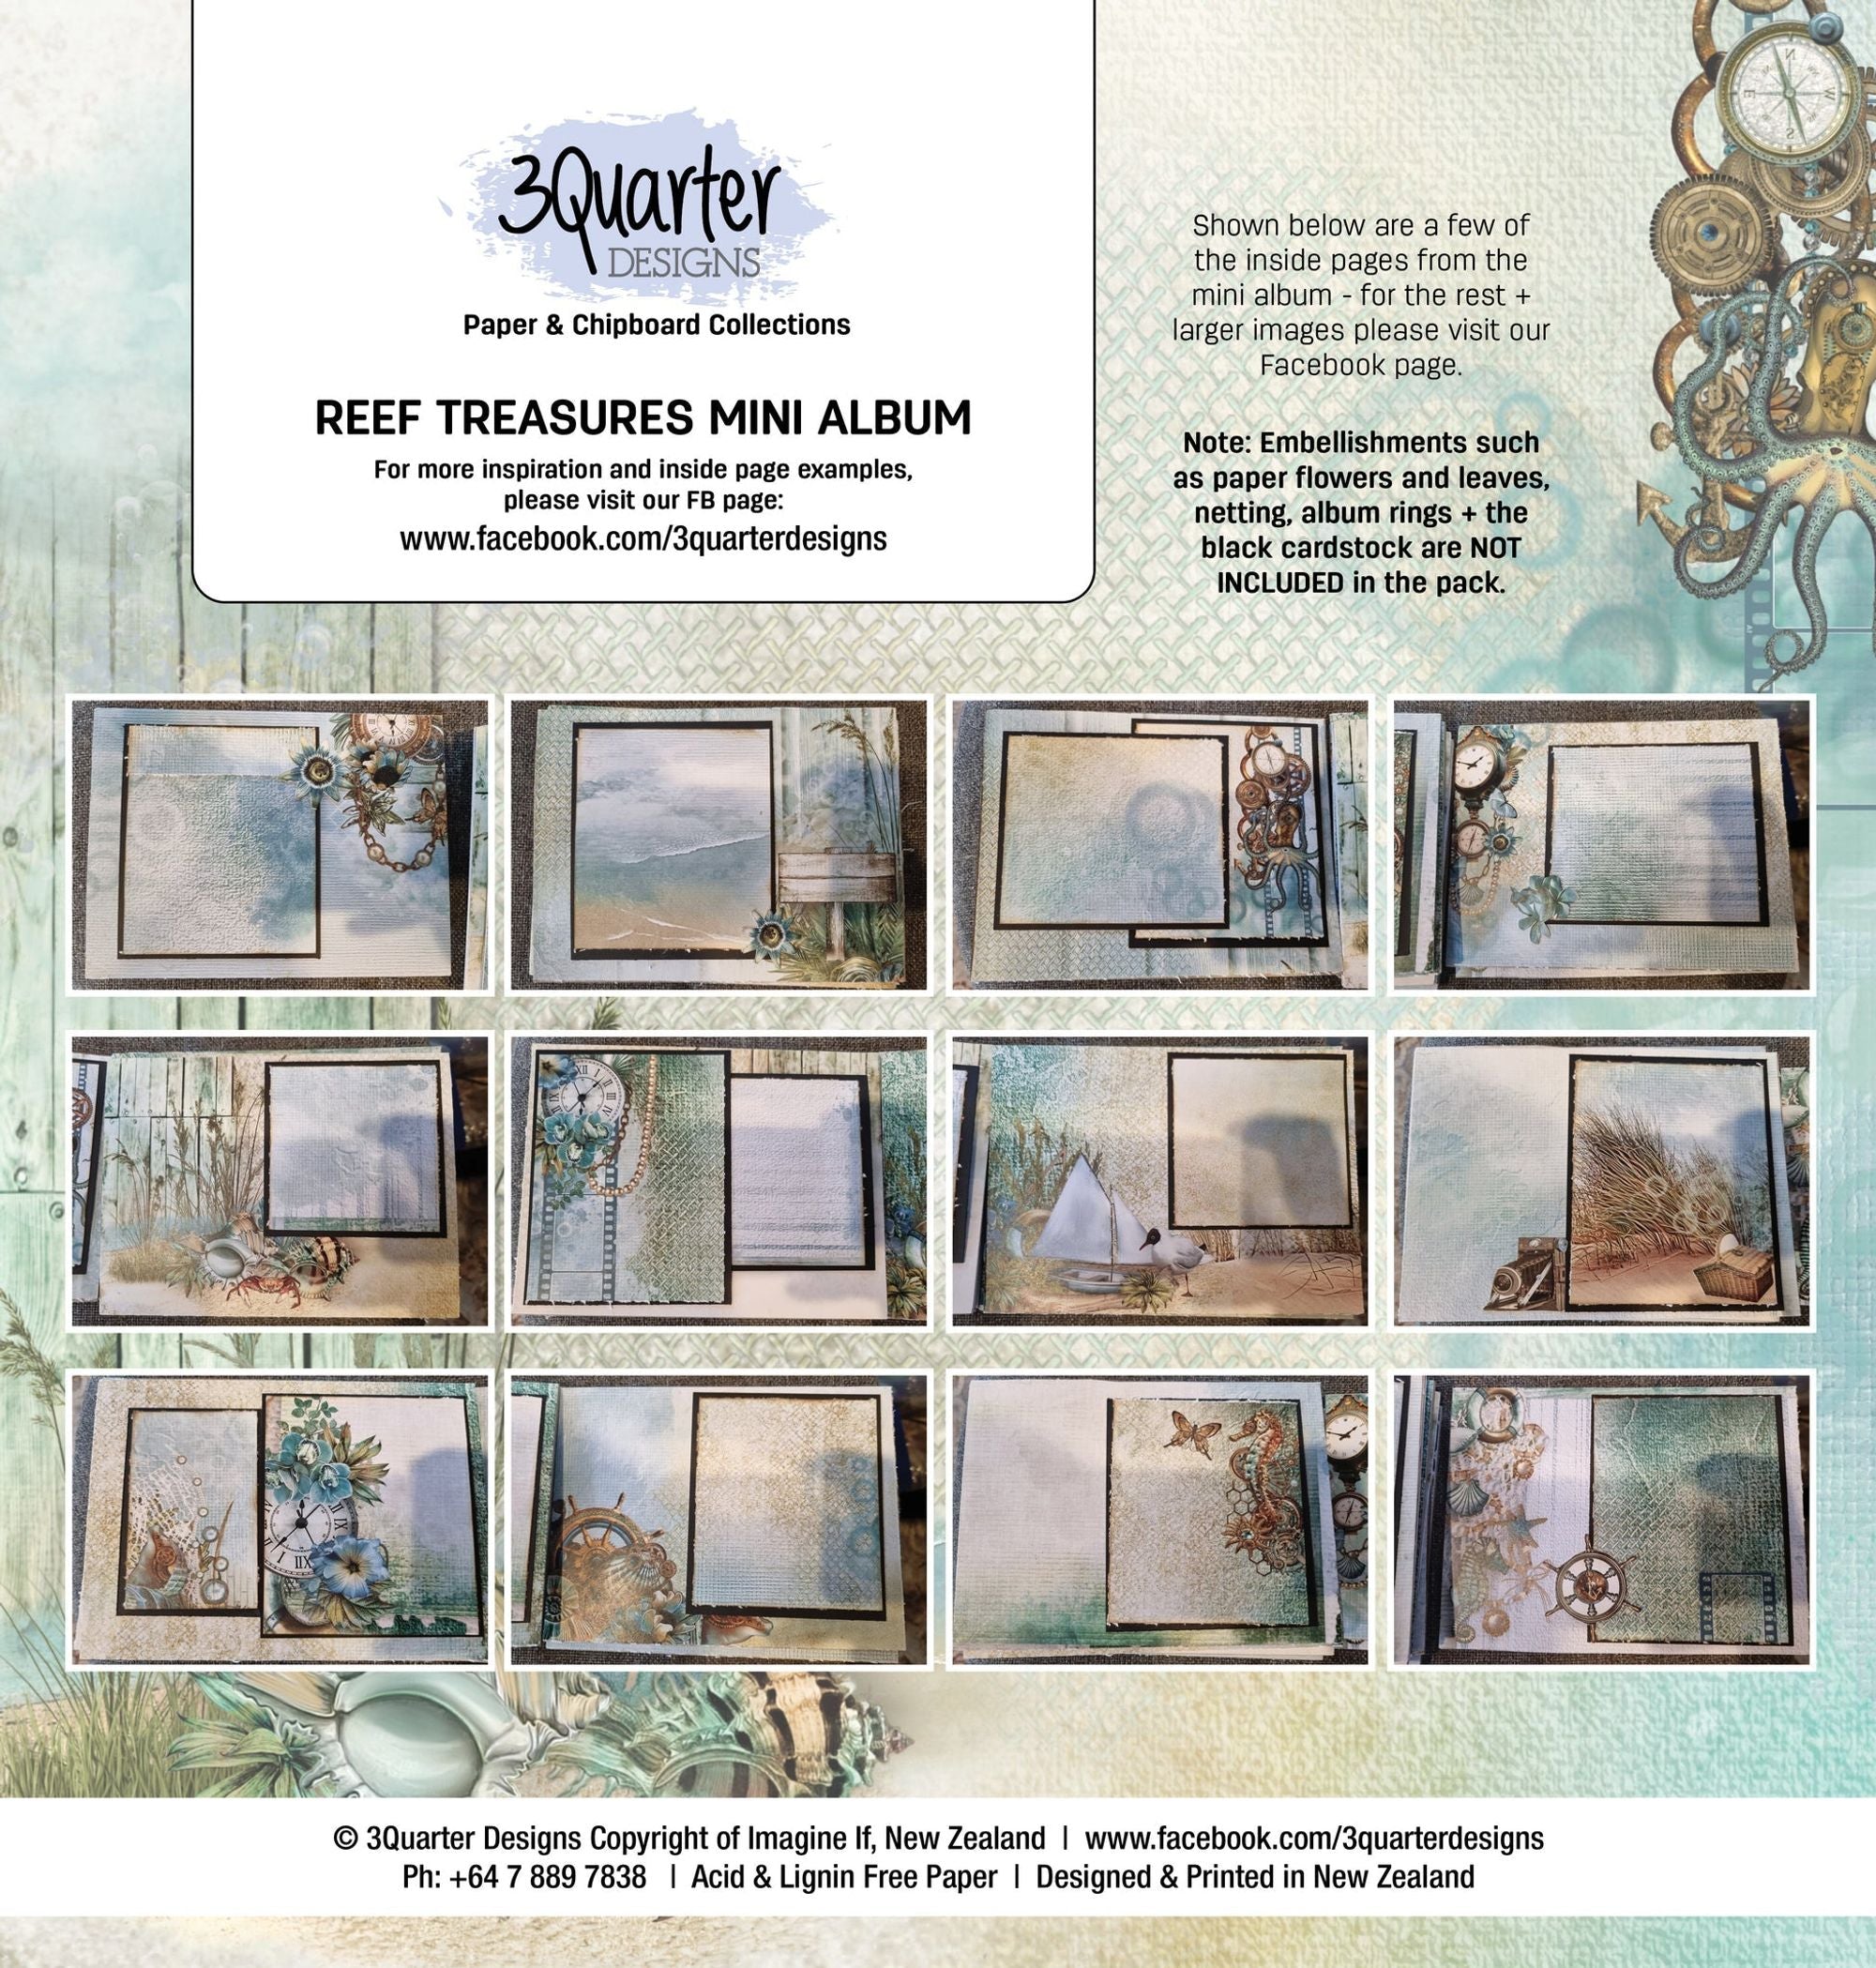 3Quarter Designs Reef Treasures Mini Album Base Kit